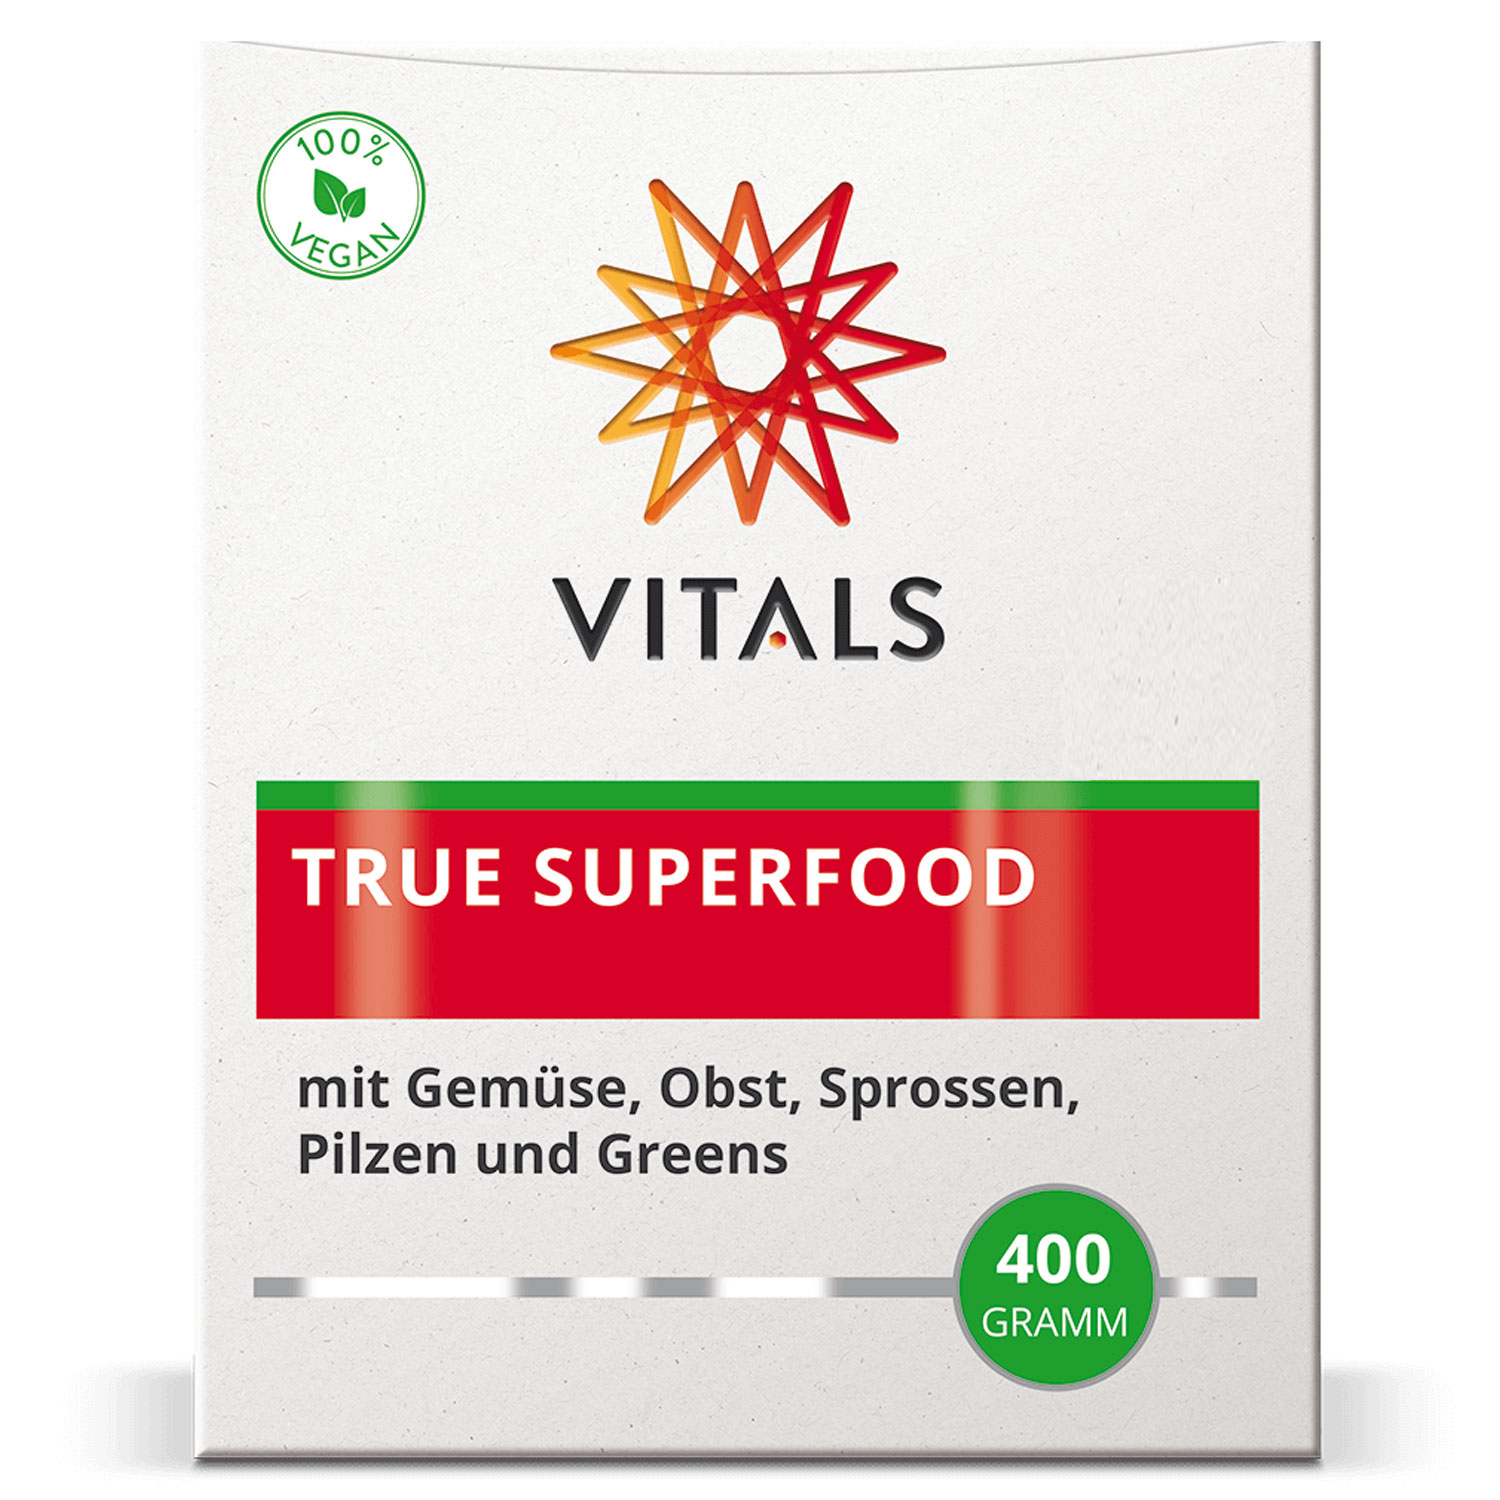 True Superfood von Vitals - Verpackung